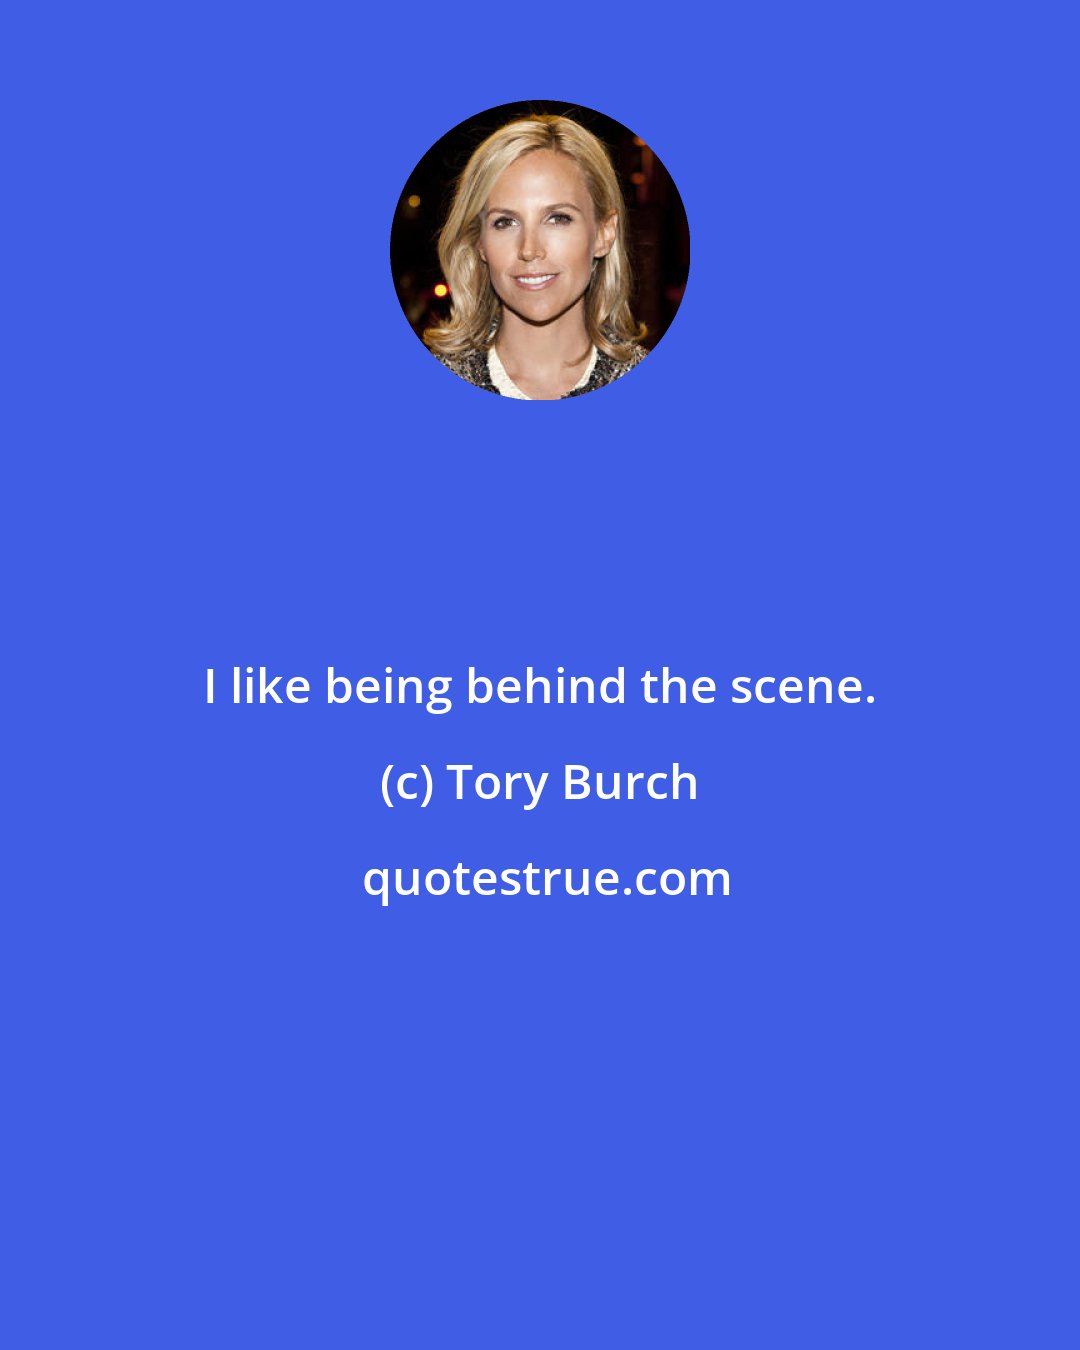 Tory Burch: I like being behind the scene.